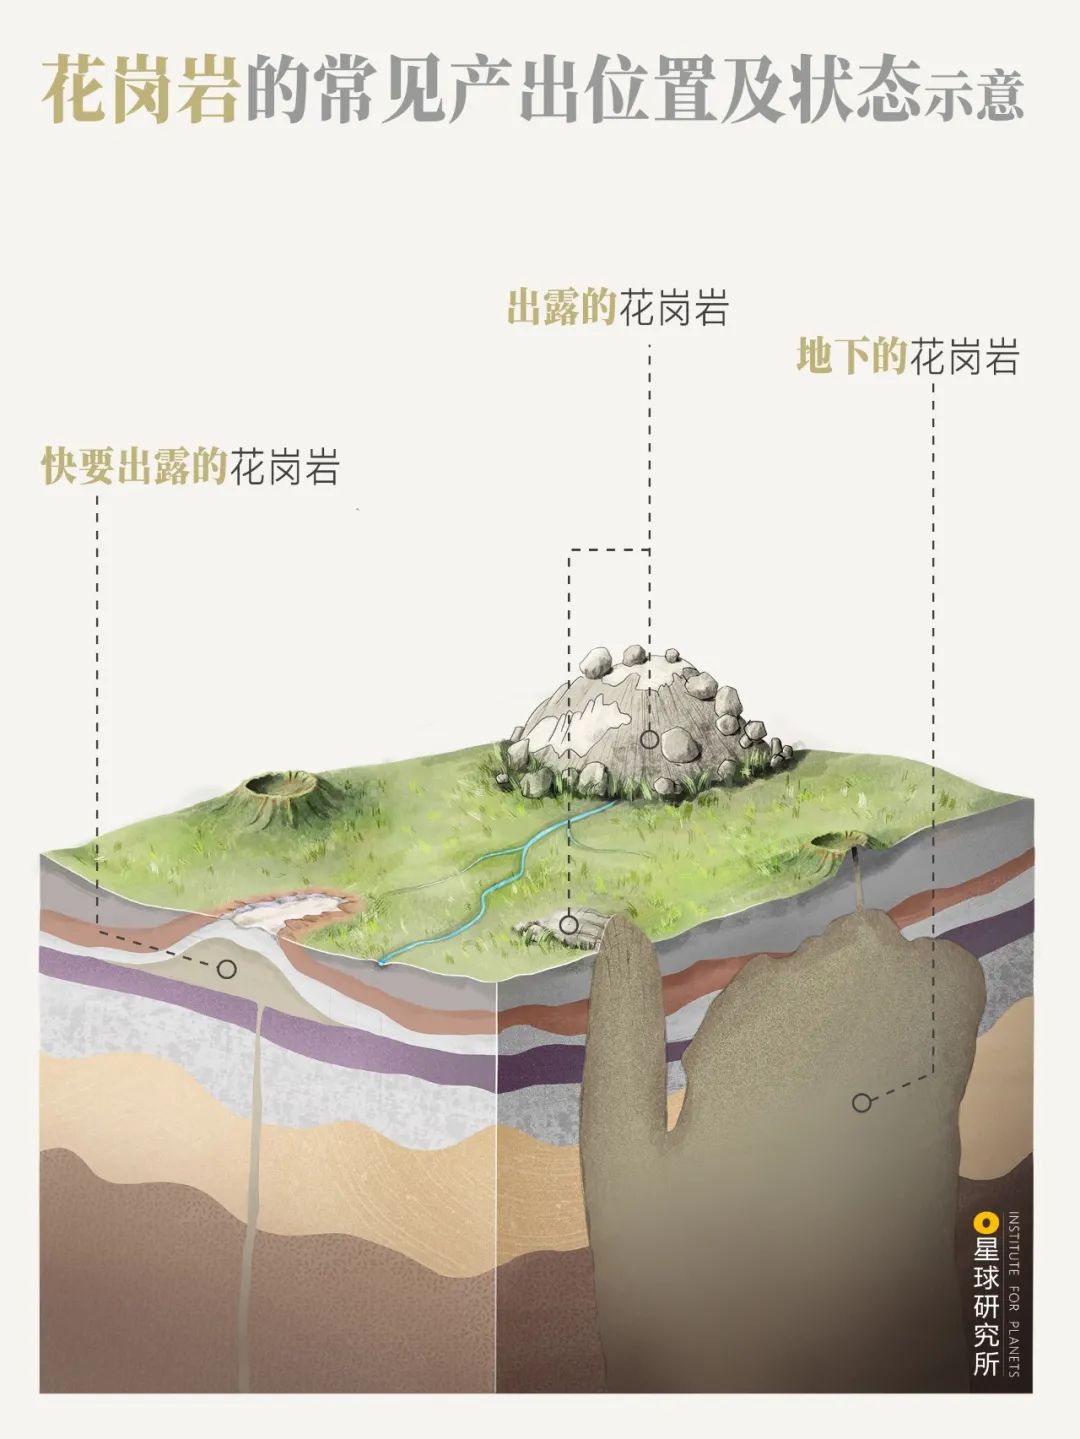 10%的中国风景——花岗岩之国（上）_星球研究所 - MdEditor